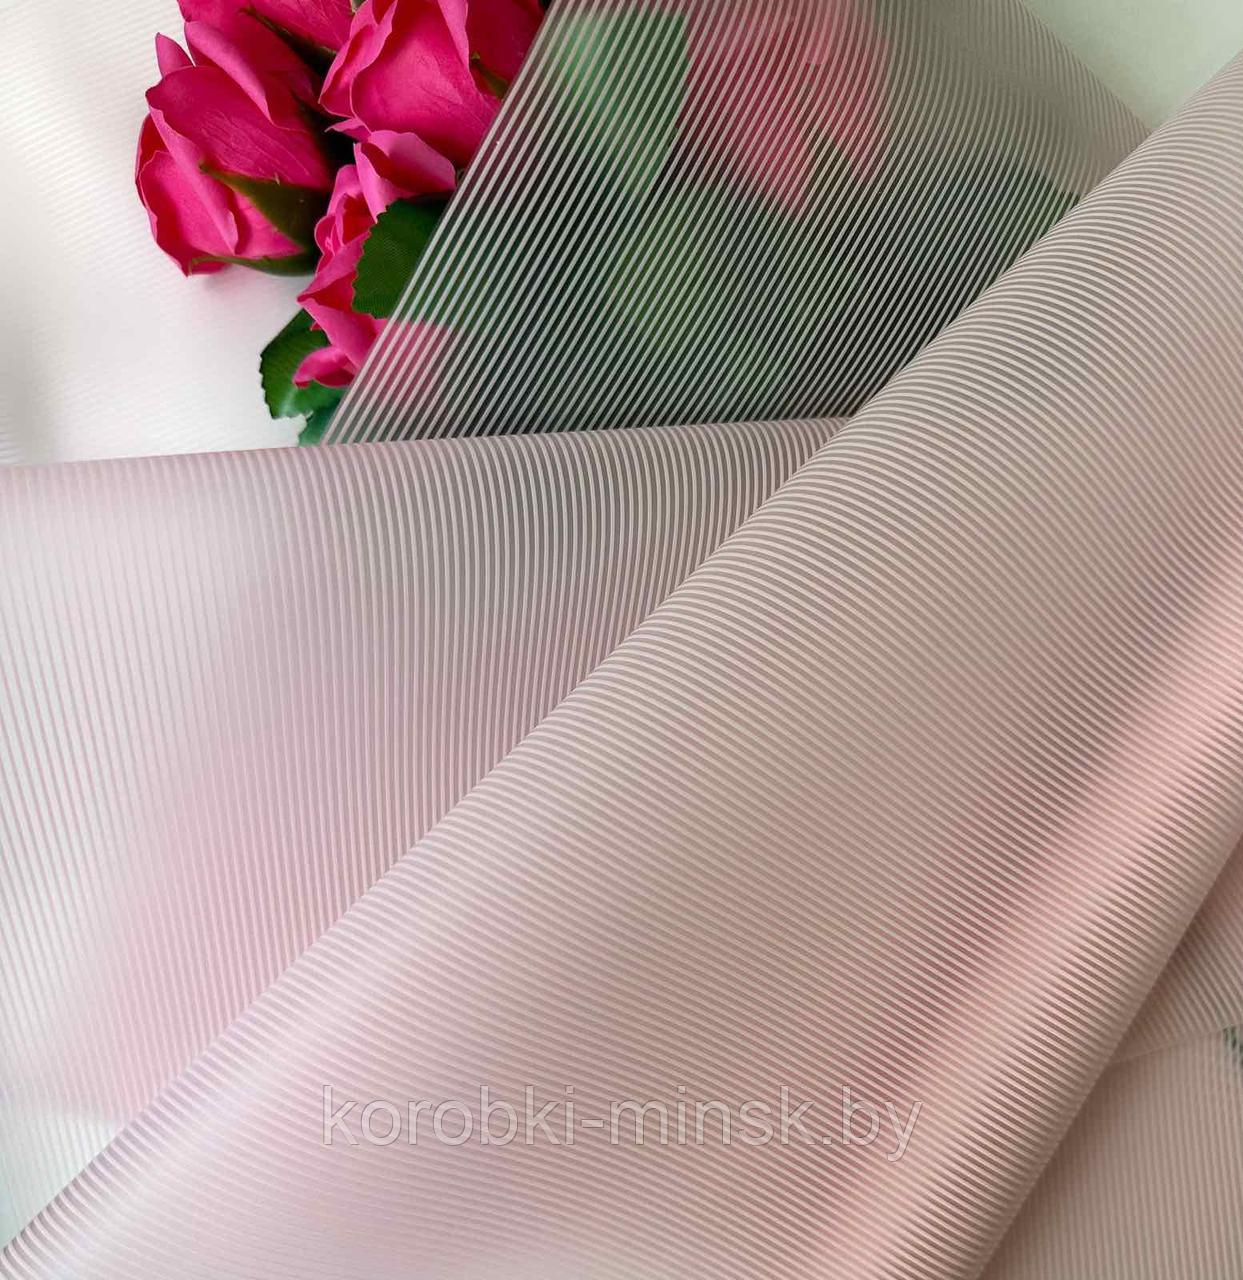 Пленка флористическая Нежные полосы 50мкм, 58см*10м, нежно-розовый